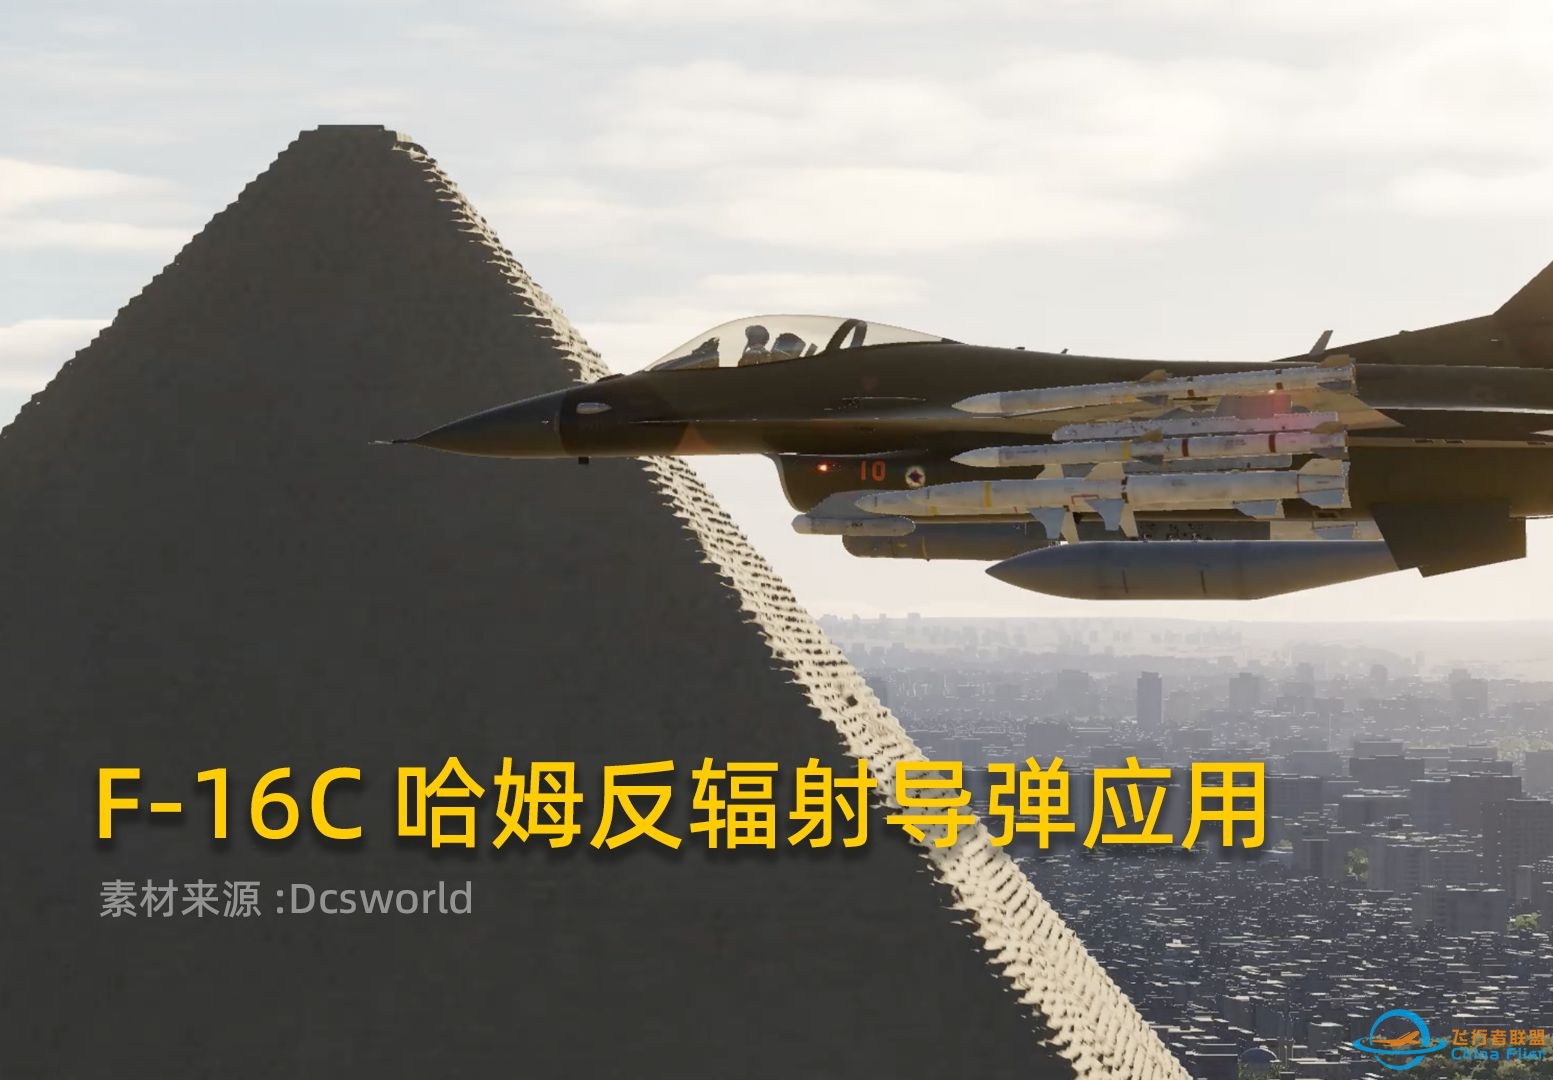 Dcsworld F-16C哈姆反辐射导弹教程，HTS哈姆瞄准吊舱的应用！-798 